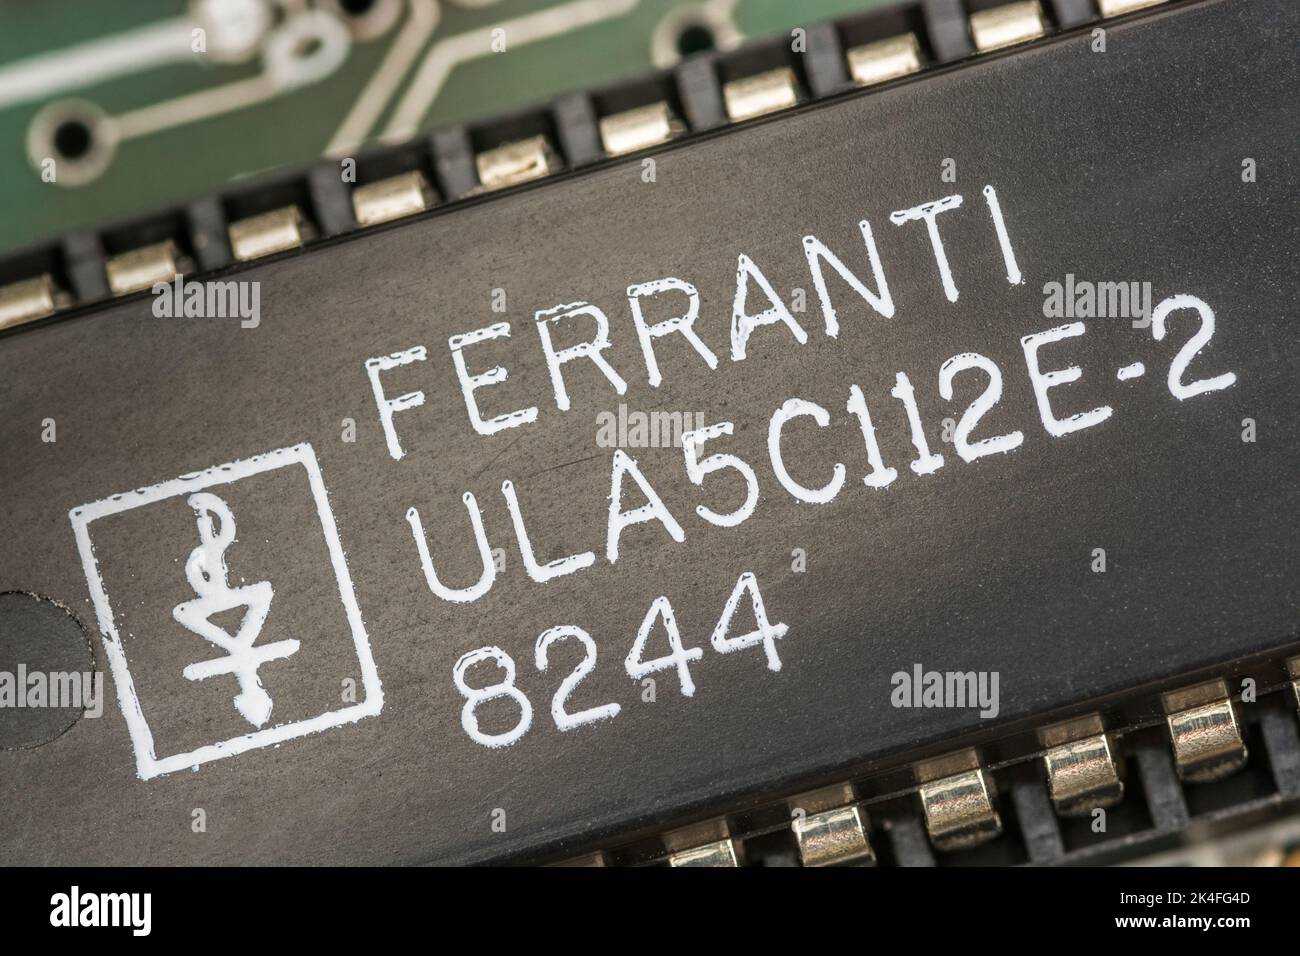 40-poliger Ferranti ULA [Uncommitted Logic Array] auf der Hauptplatine eines 1982 16k Sinclair ZX Spectrum Computers. Für integrierte Schaltungen, Elektronik. Stockfoto